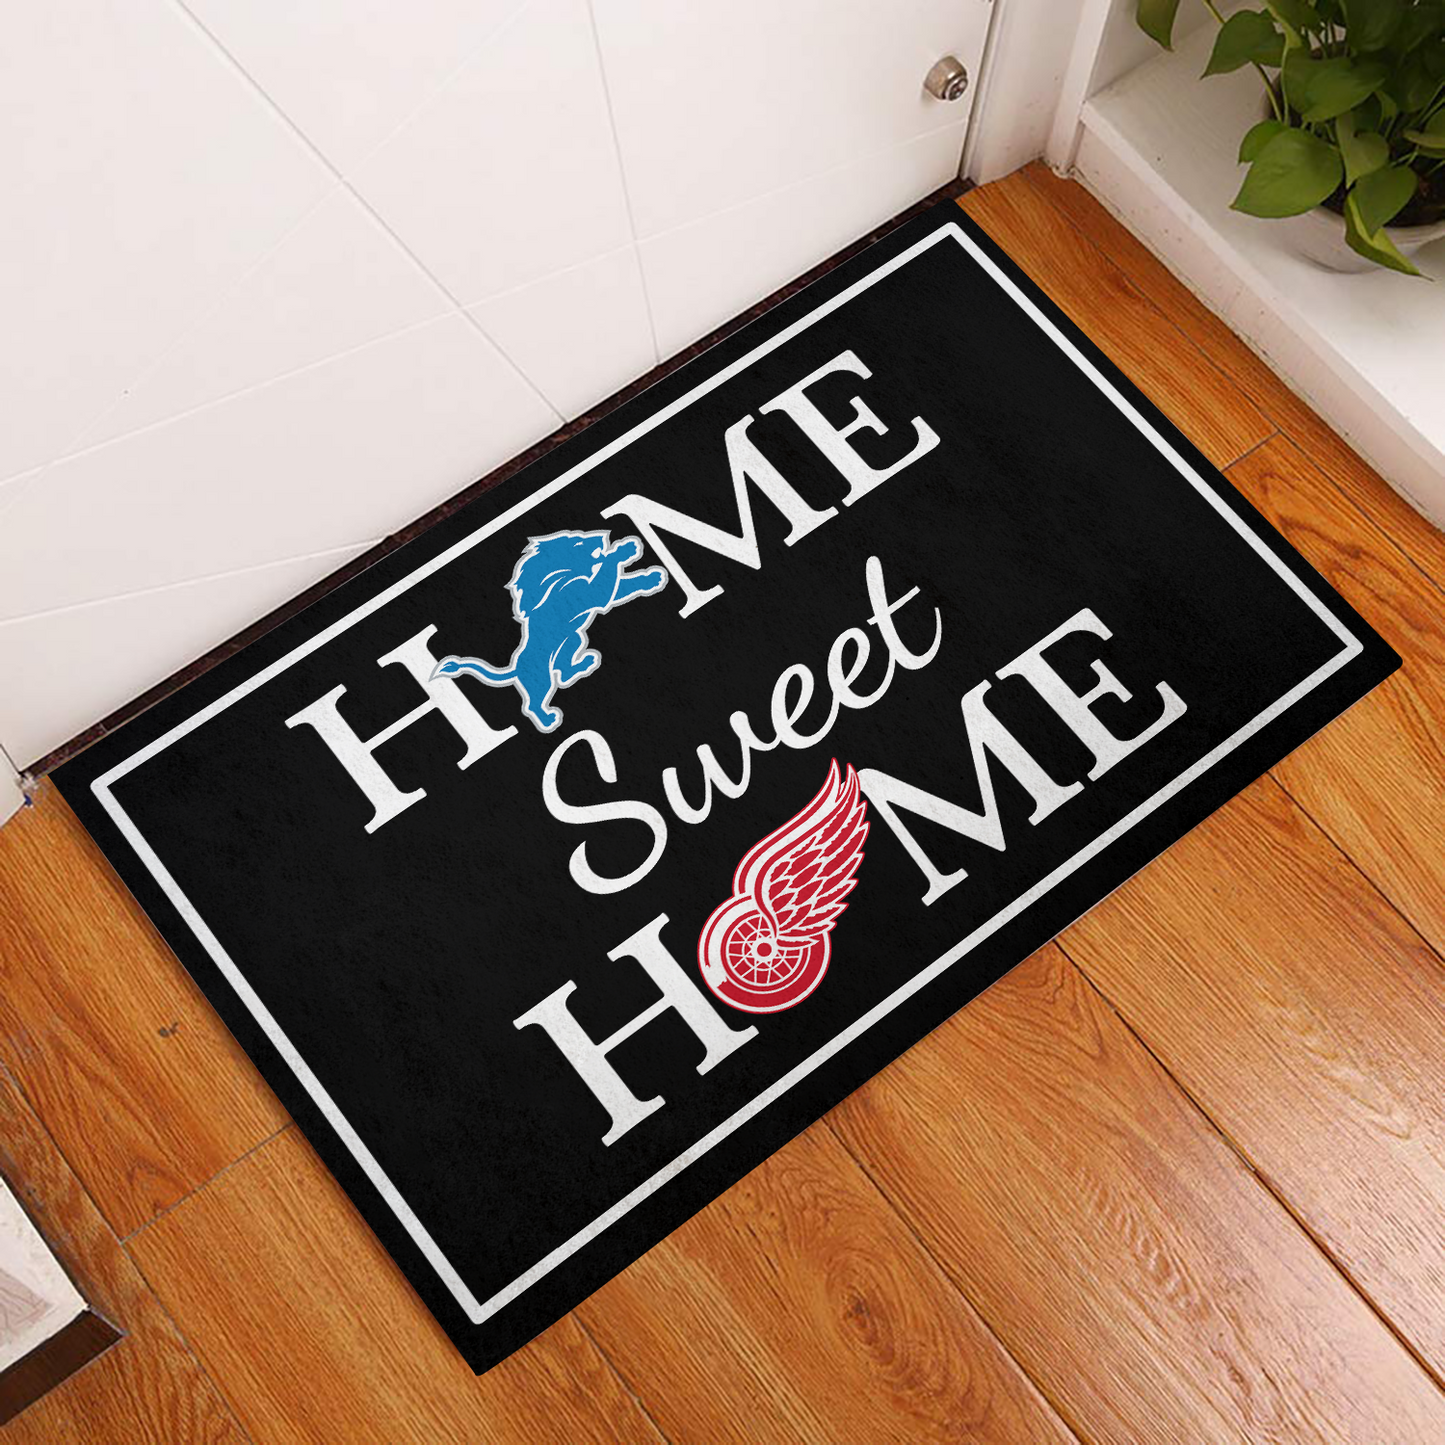 Home Sweet Home - Customized Doormat - Anti Slip Indoor Doormat (Vs17)